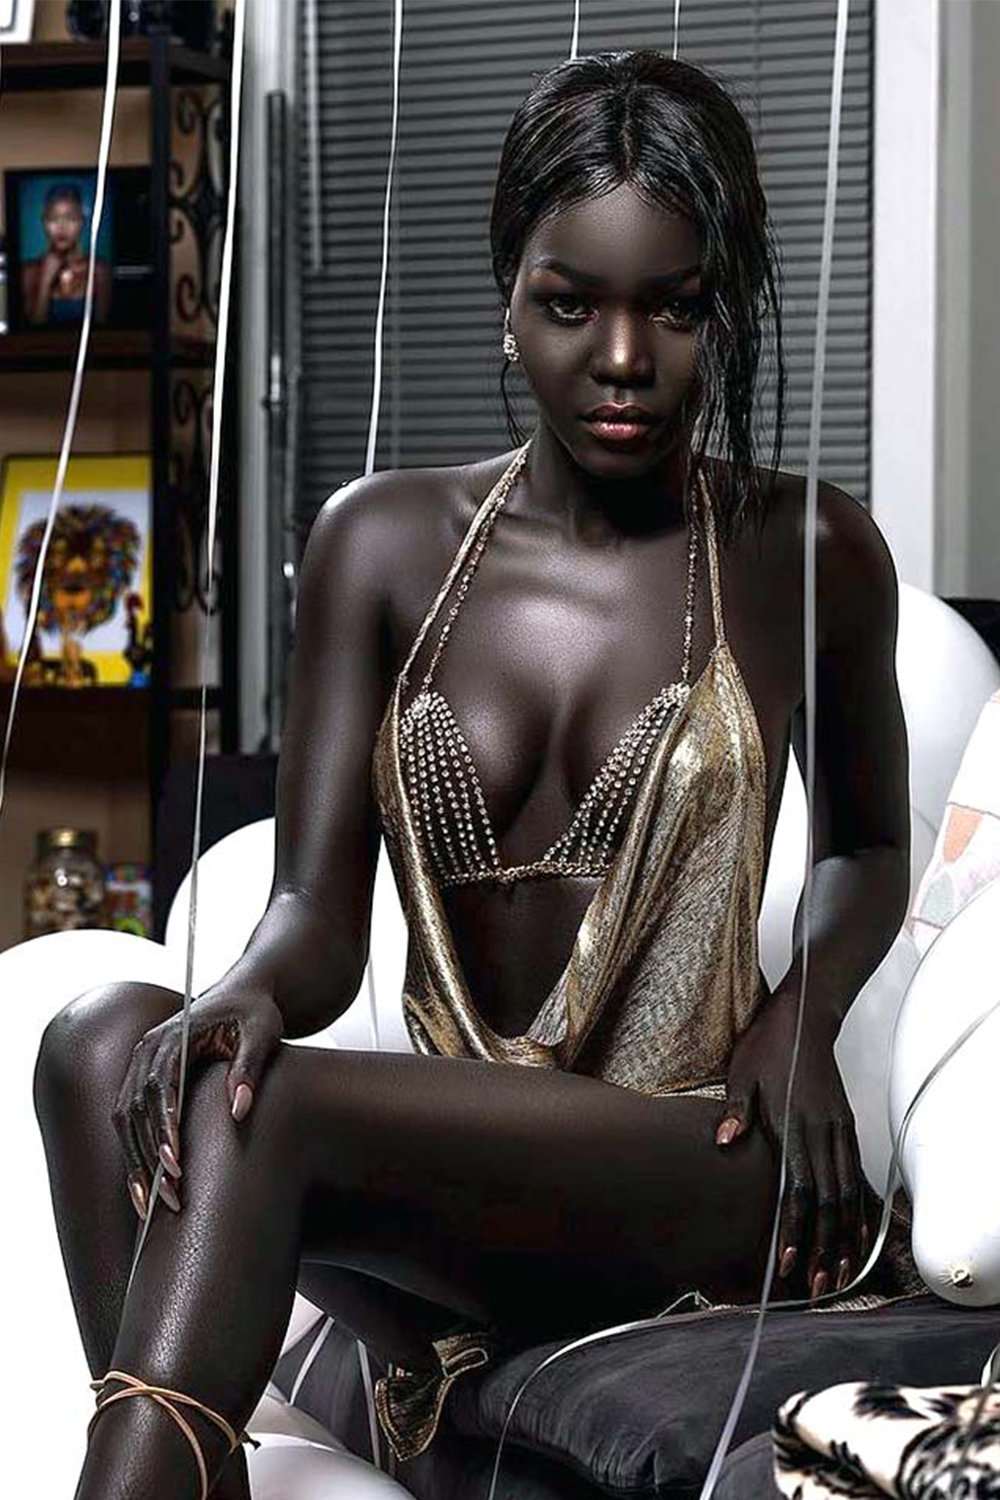 Е негритянок. Няким Гатвеч. Нуаким Гатвеч модель из Южного Судана. Королева тьмы модель из Южного Судана Ньяким. Nyakim Gatwech (Ньяким Гатвеч) - 24-летняя модель.